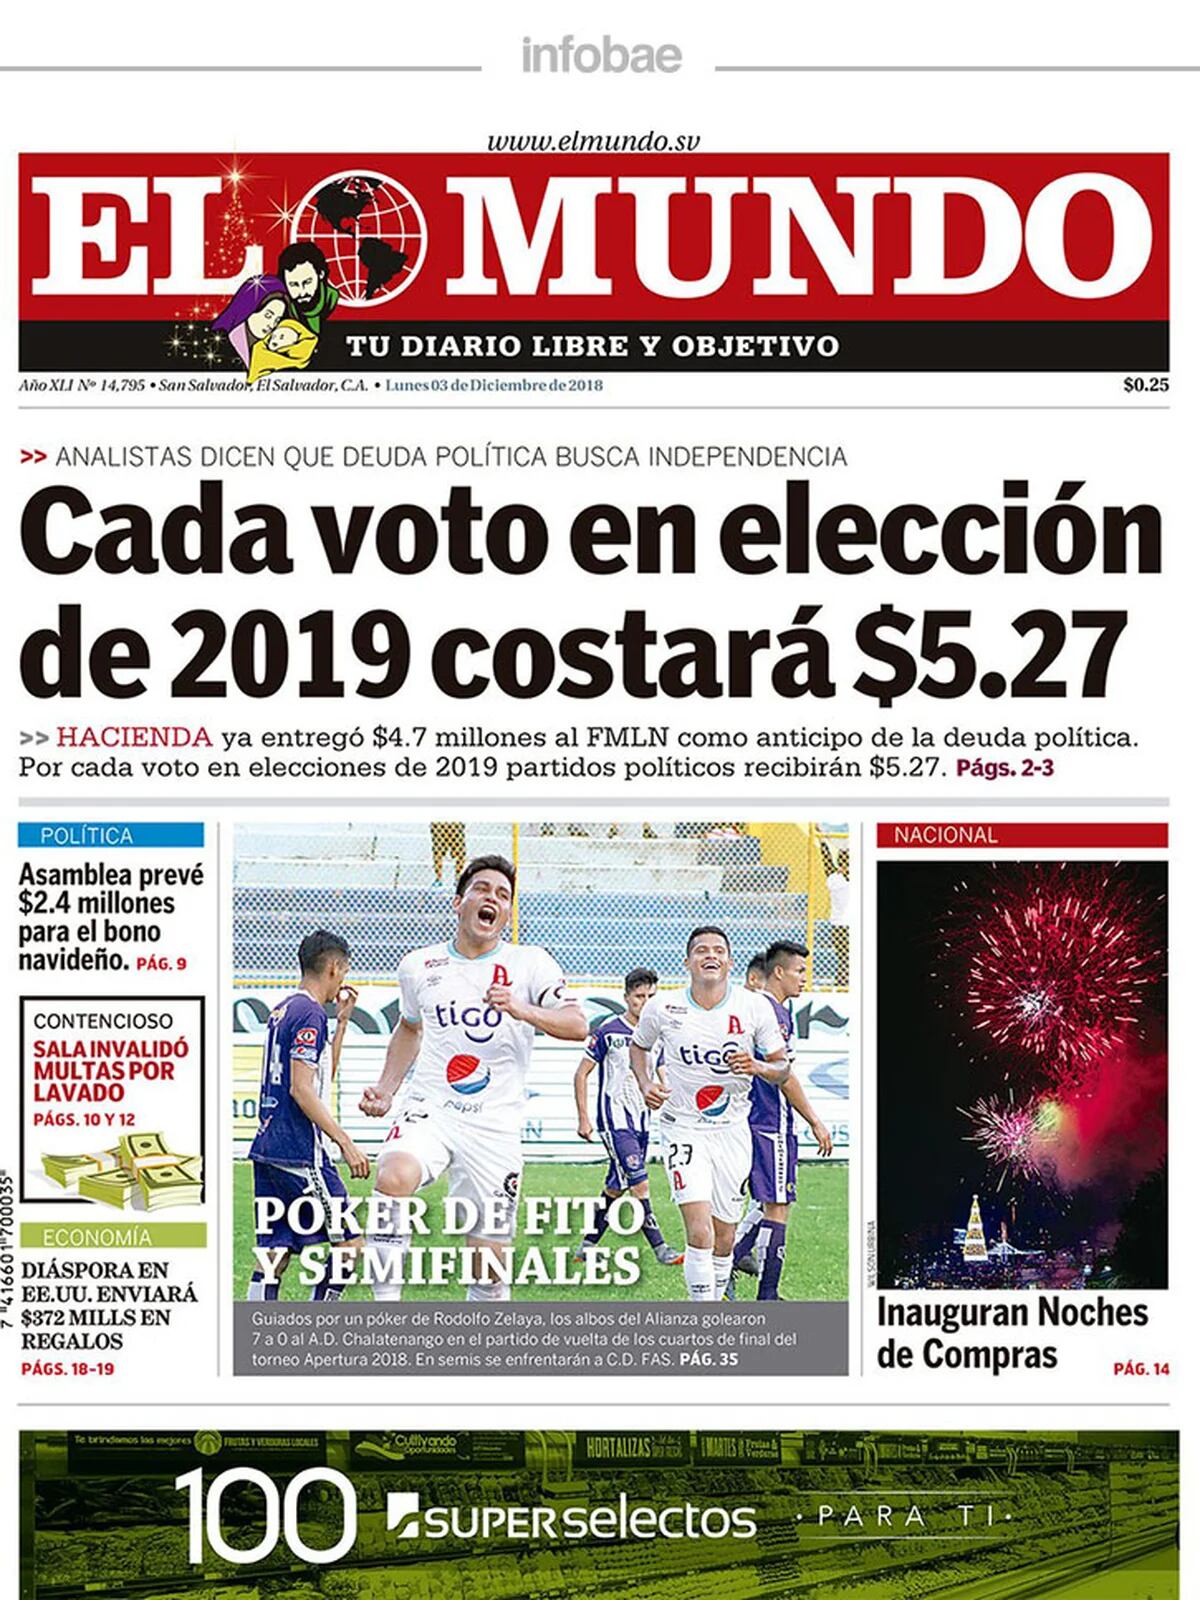 El Mundo El Salvador Lunes 03 De Diciembre De 2018 Infobae 8008